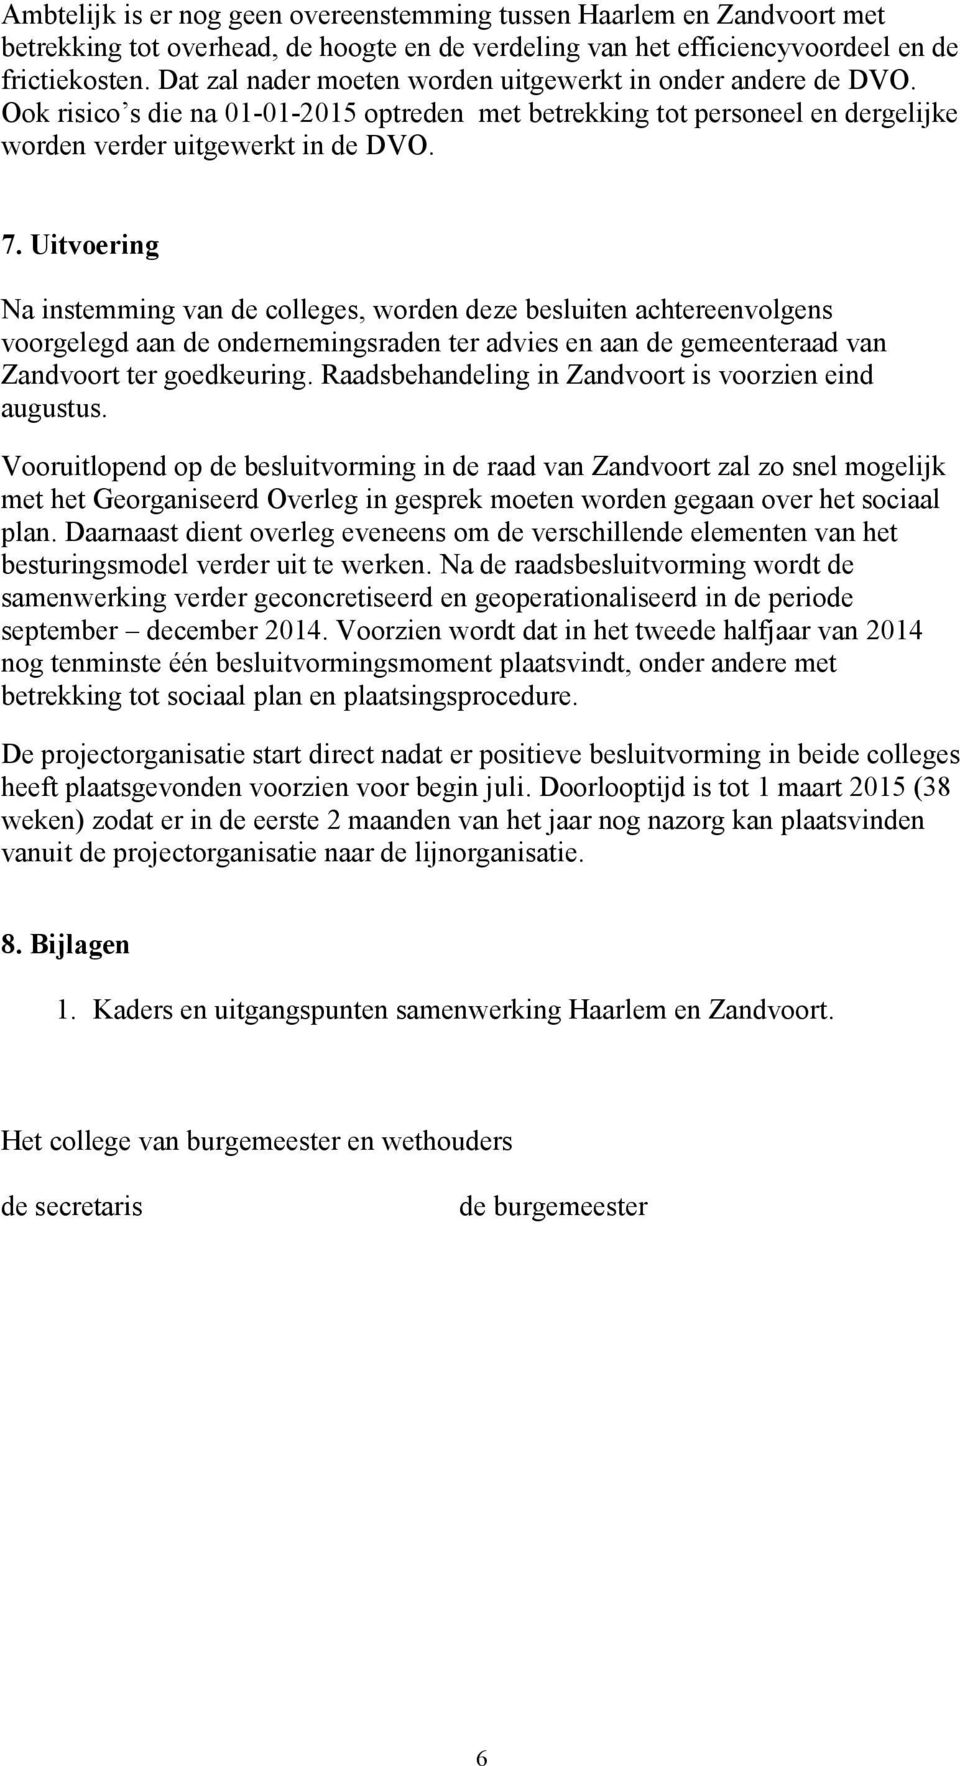 Uitvoering Na instemming van de colleges, worden deze besluiten achtereenvolgens voorgelegd aan de ondernemingsraden ter advies en aan de gemeenteraad van Zandvoort ter goedkeuring.